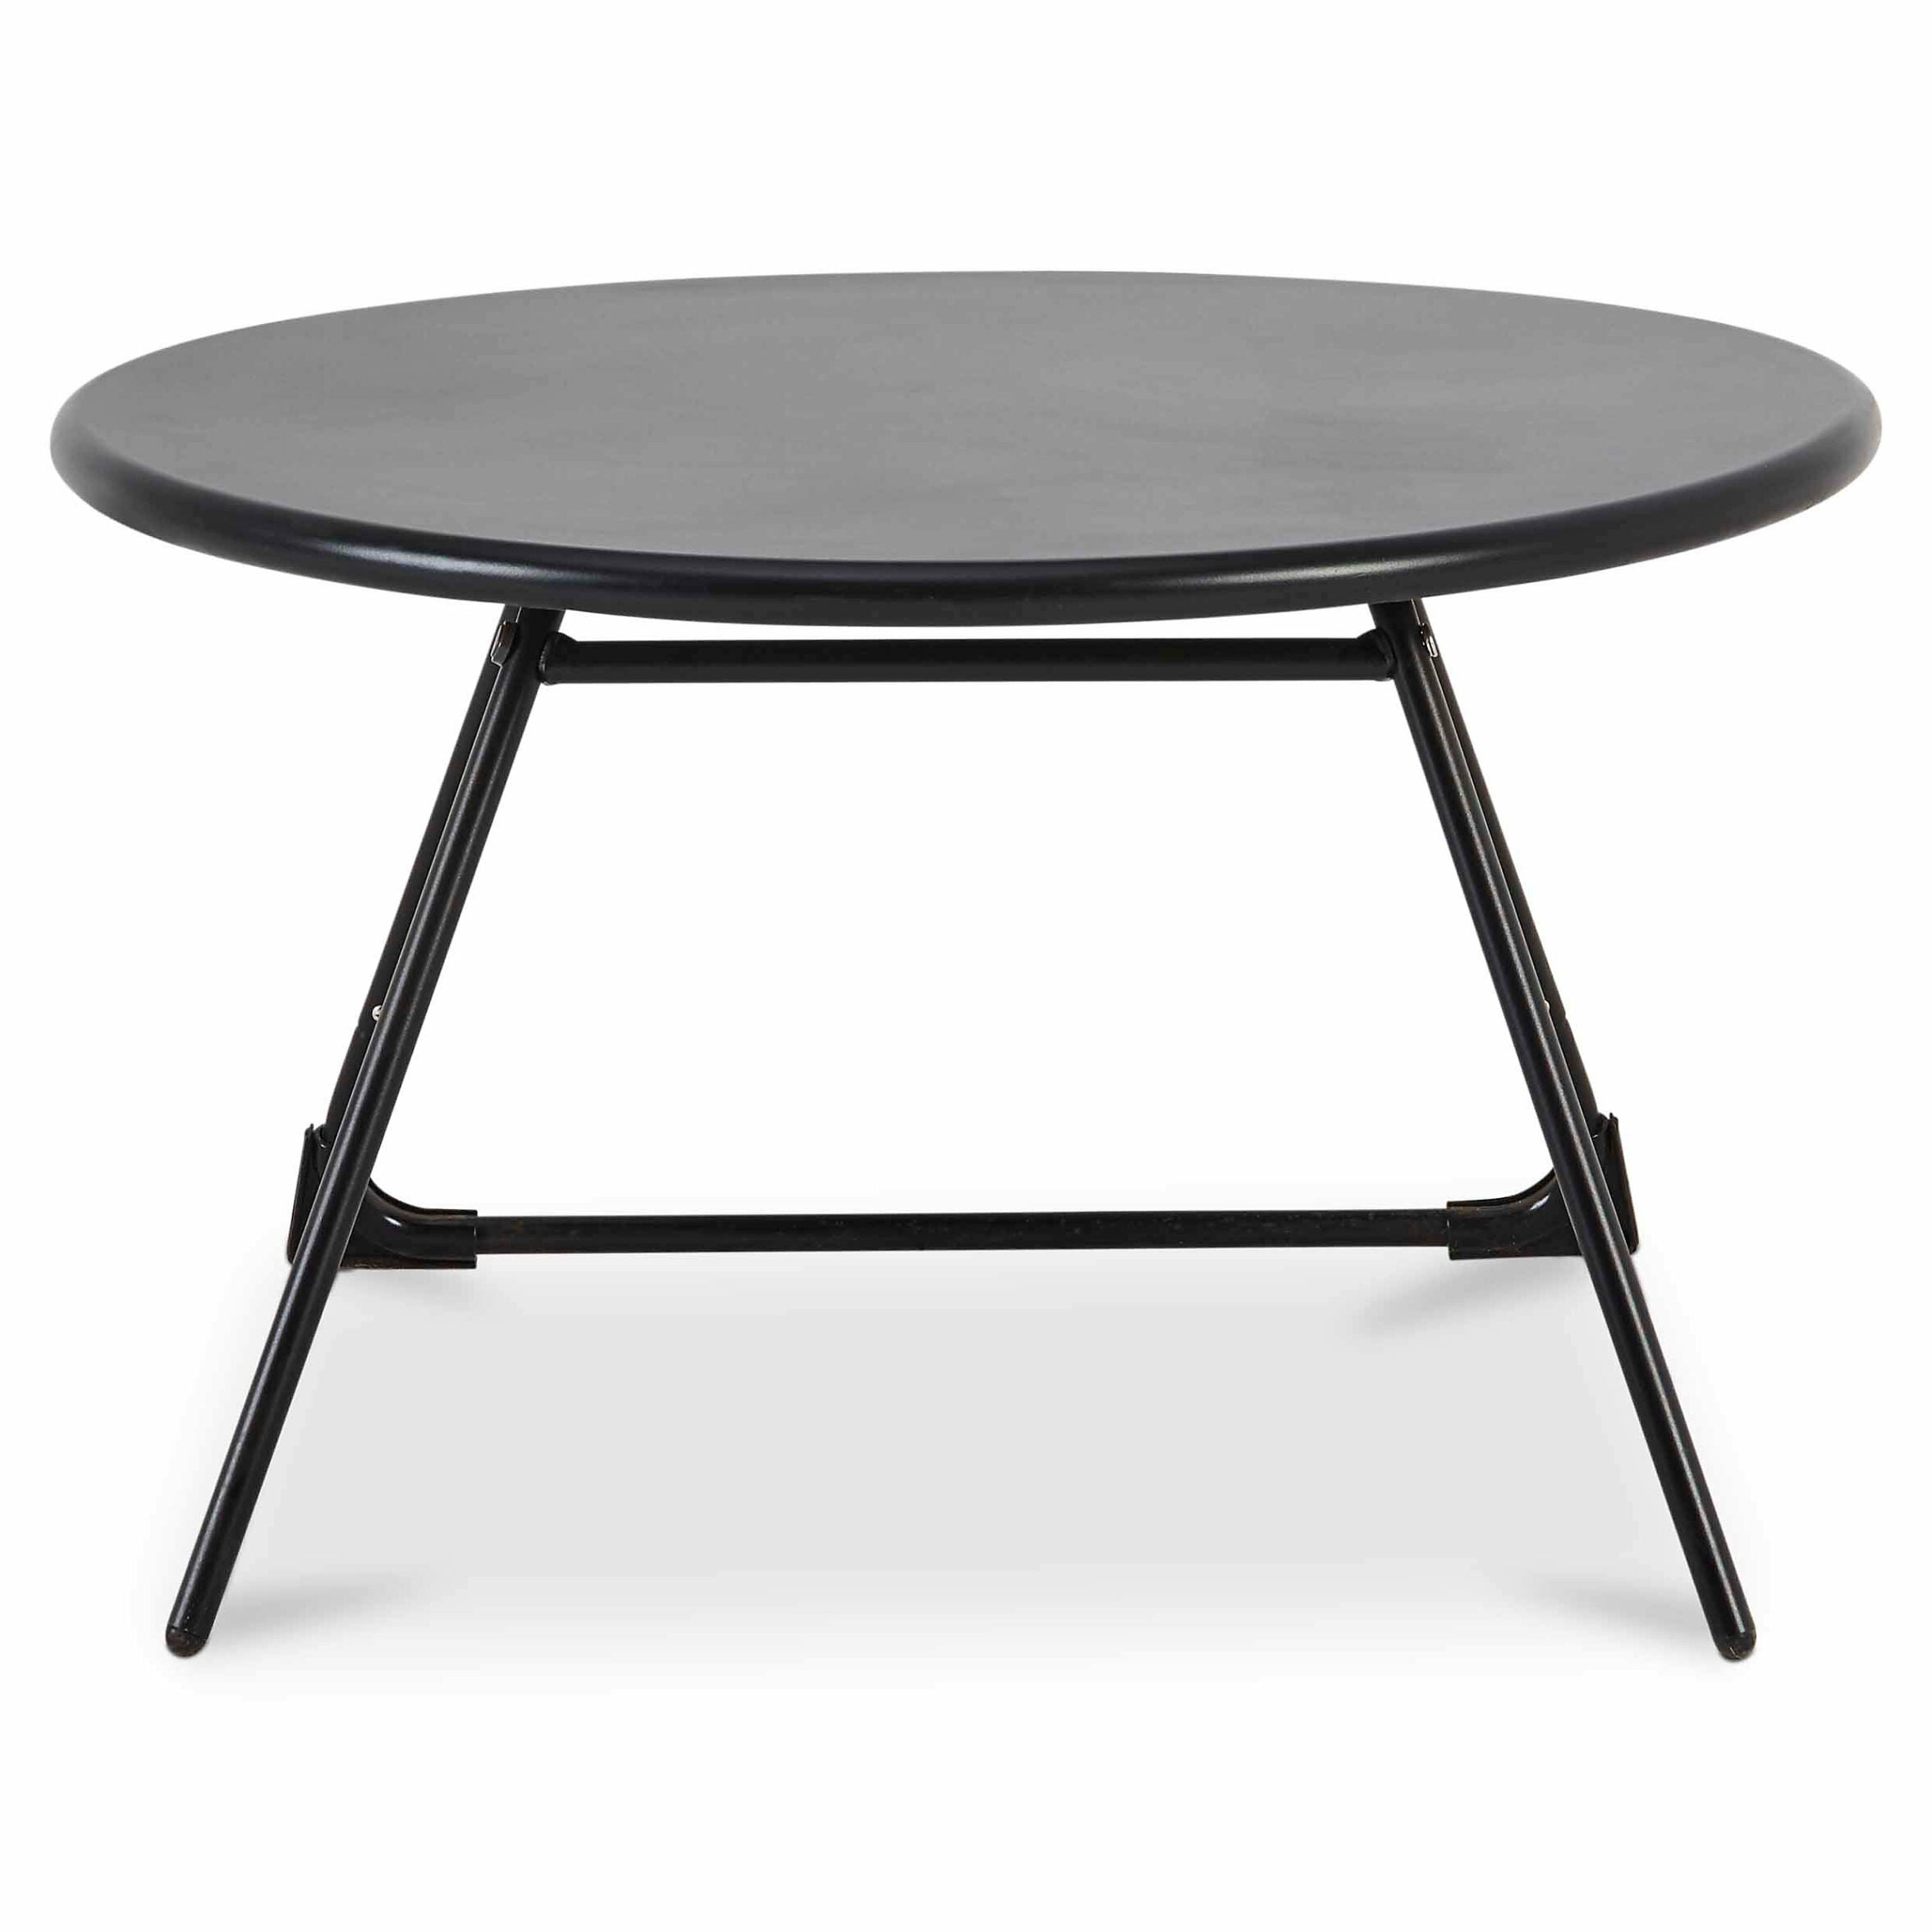 Garden Table GoodHome Nova Metal, Black, Water resistant 700mm - 6657